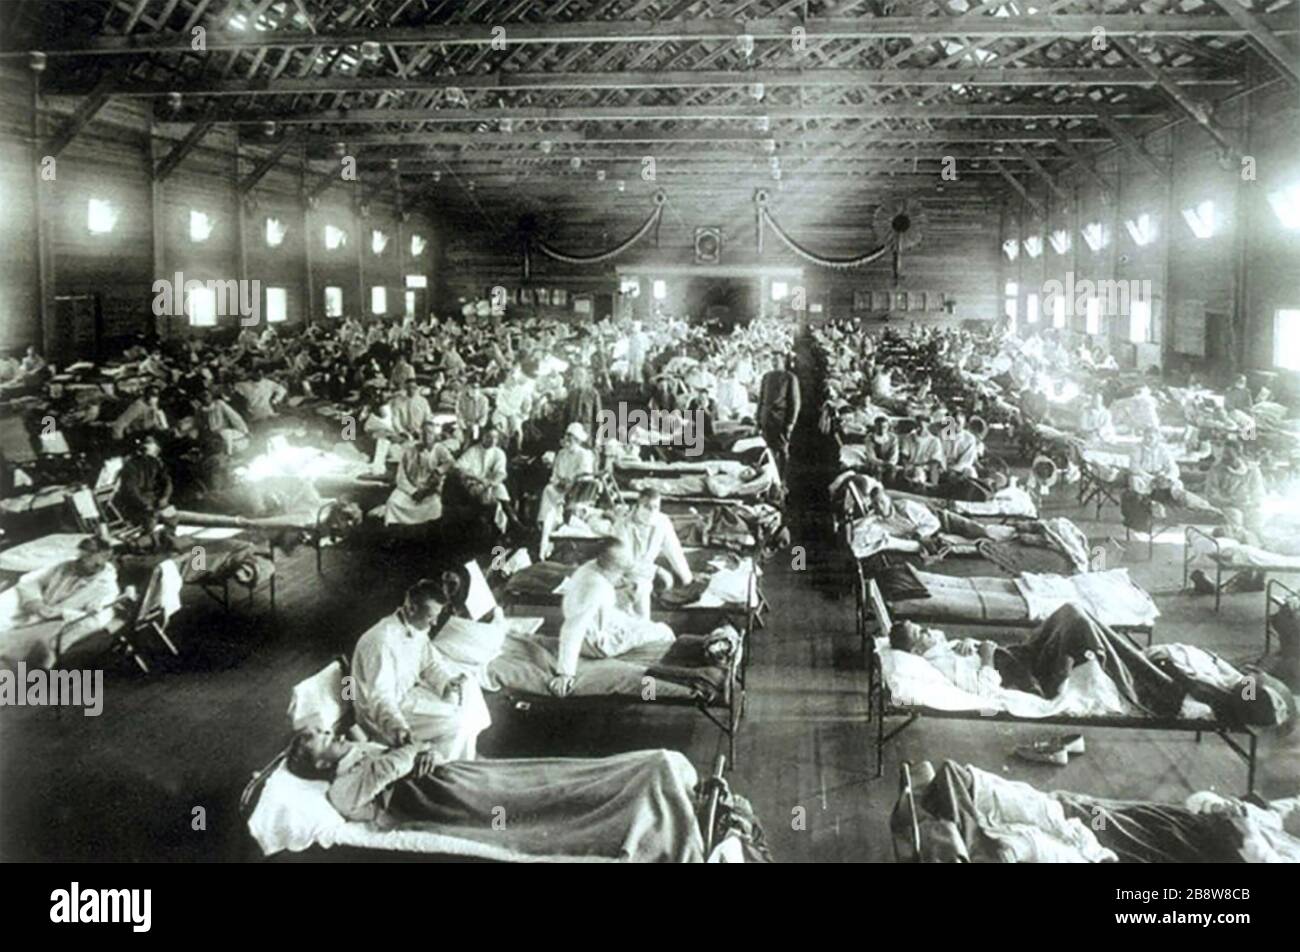 SPANISCHE GRIPPE-SOLDATEN aus Fort Riley, Kansas, die an spanischer Grippe erkrankt sind, werden in einem umgebauten Gebäude in Camp Funston hospitalisiert, in dem einige der ersten Fälle des Ausbruchs verzeichnet wurden. Stockfoto